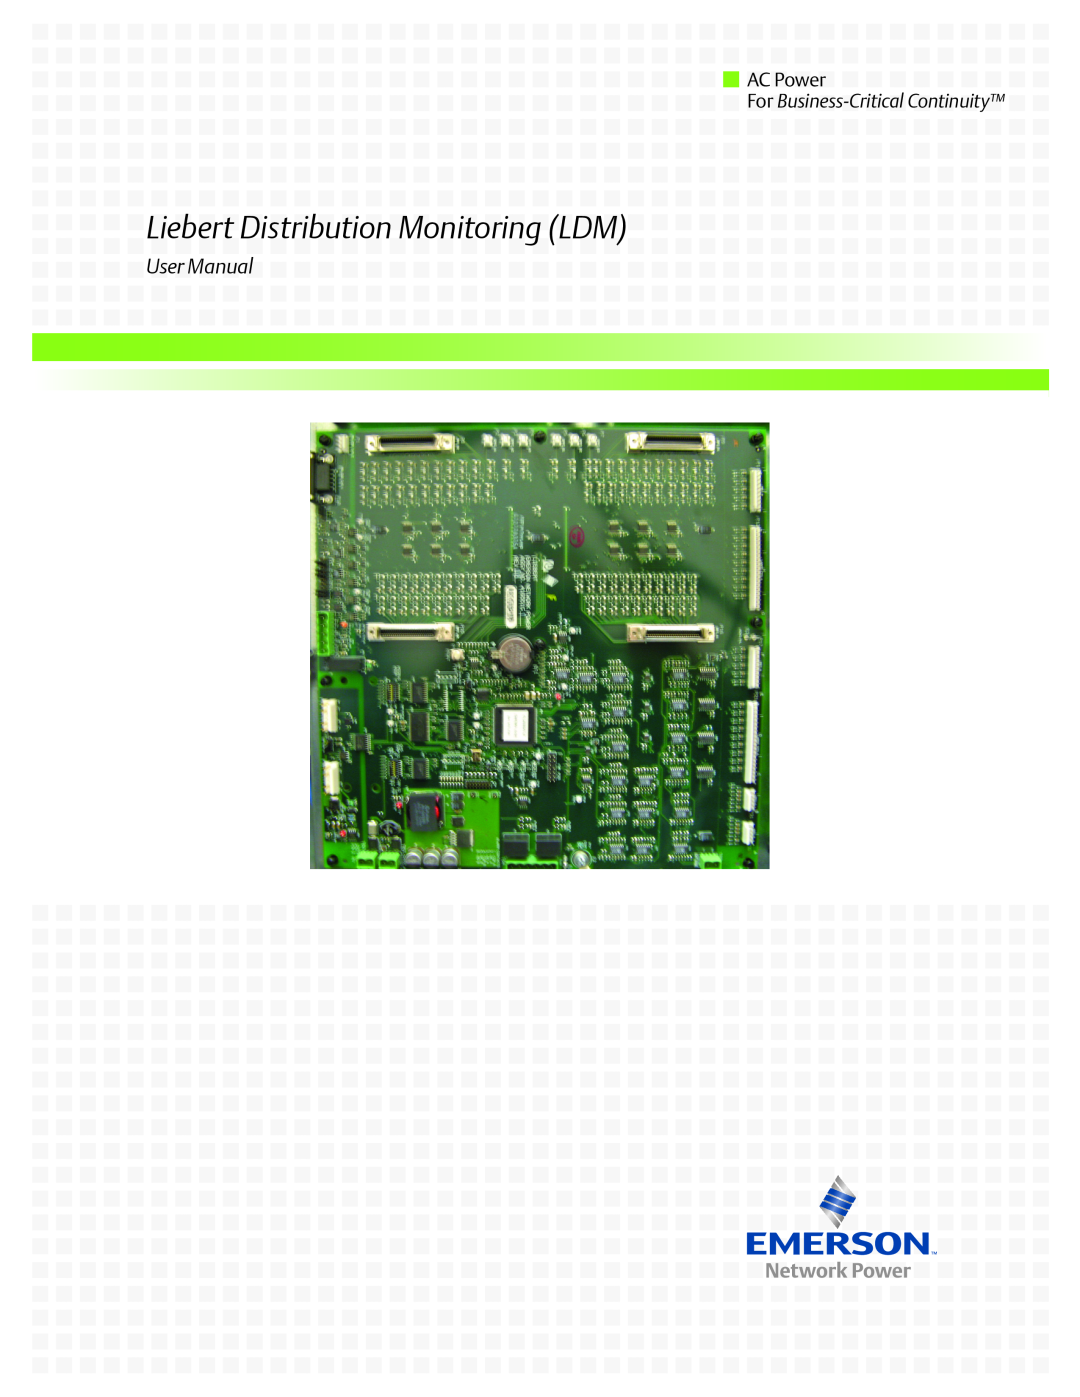 Liebert user manual Liebert Distribution Monitoring LDM, User Manual, AC Power, For Business-Critical Continuity 